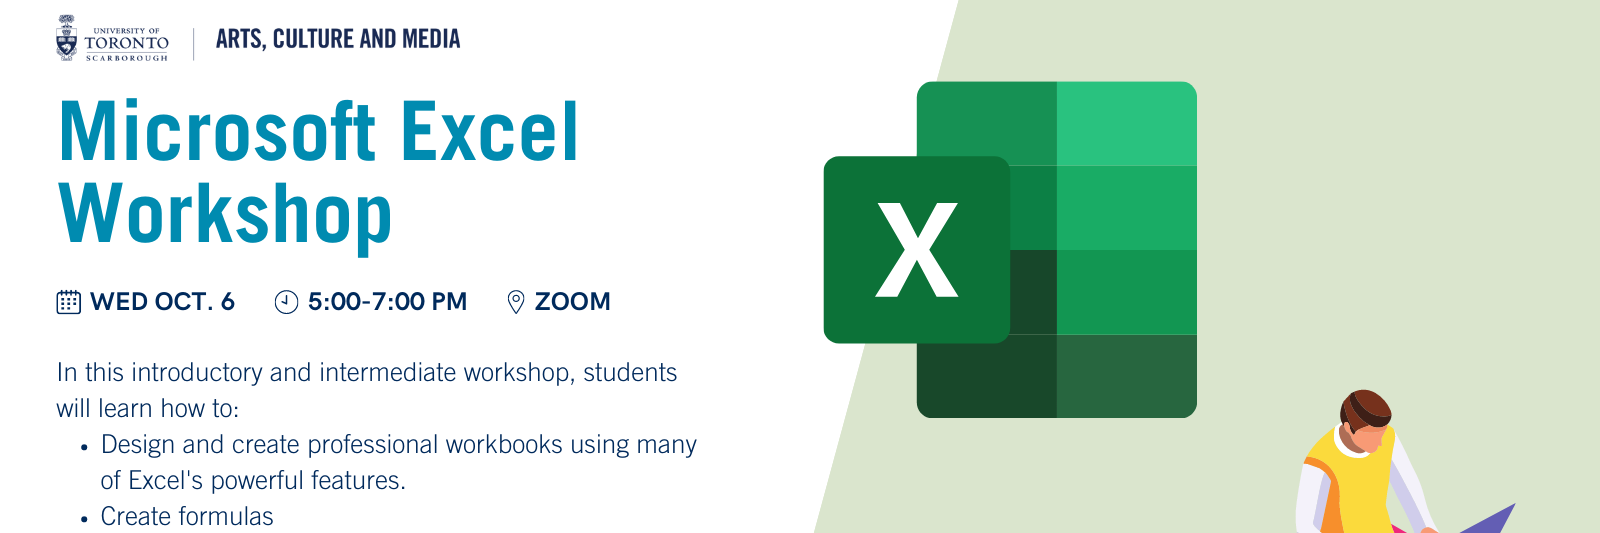 Microsoft Excel Workshop Banner